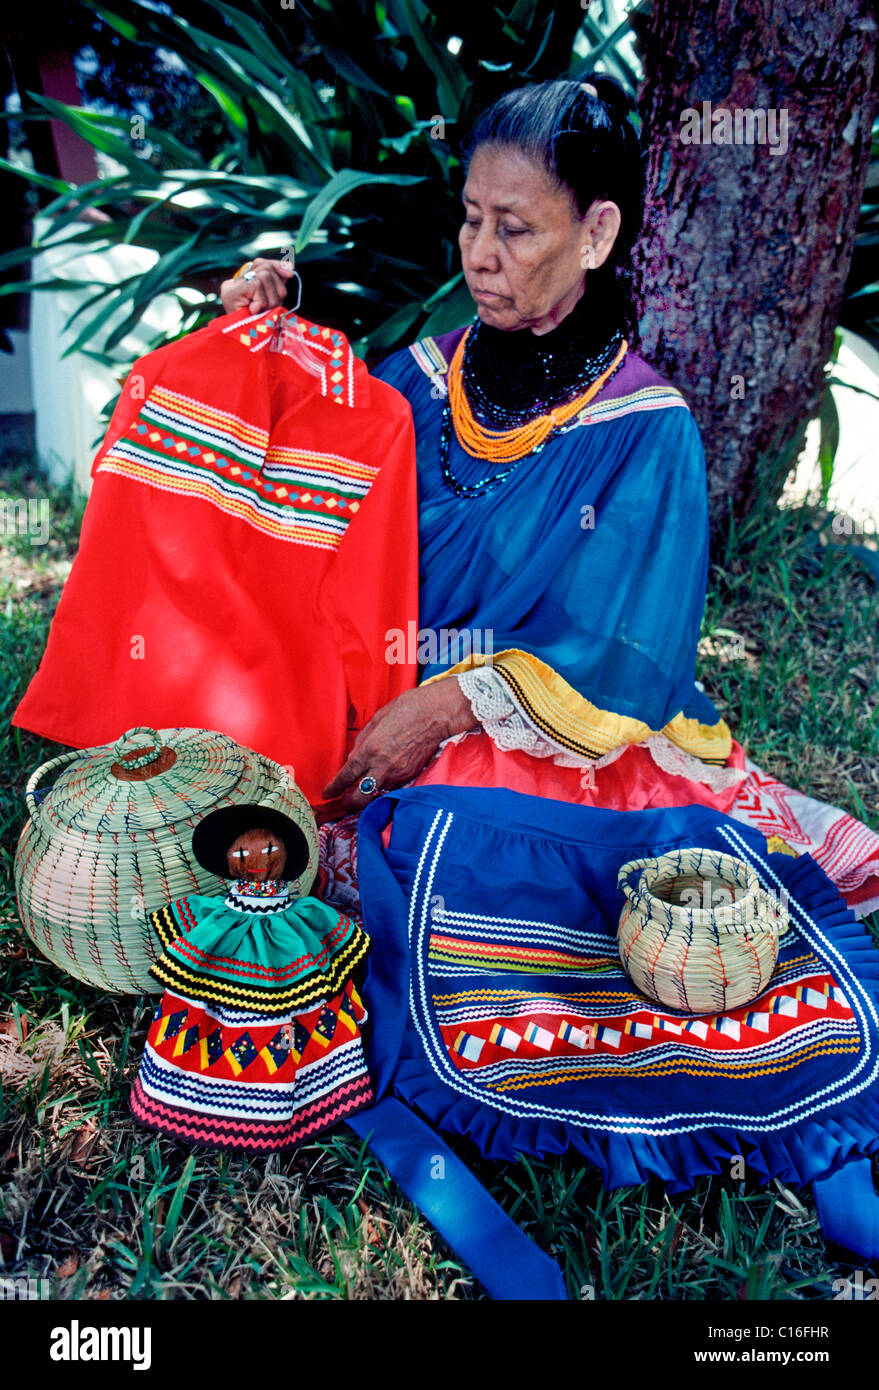 Une vieille femme indienne Miccosukee affiche des vêtements traditionnels et de l'artisanat à son Seminole village tribal dans les Everglades en Floride, USA. Banque D'Images